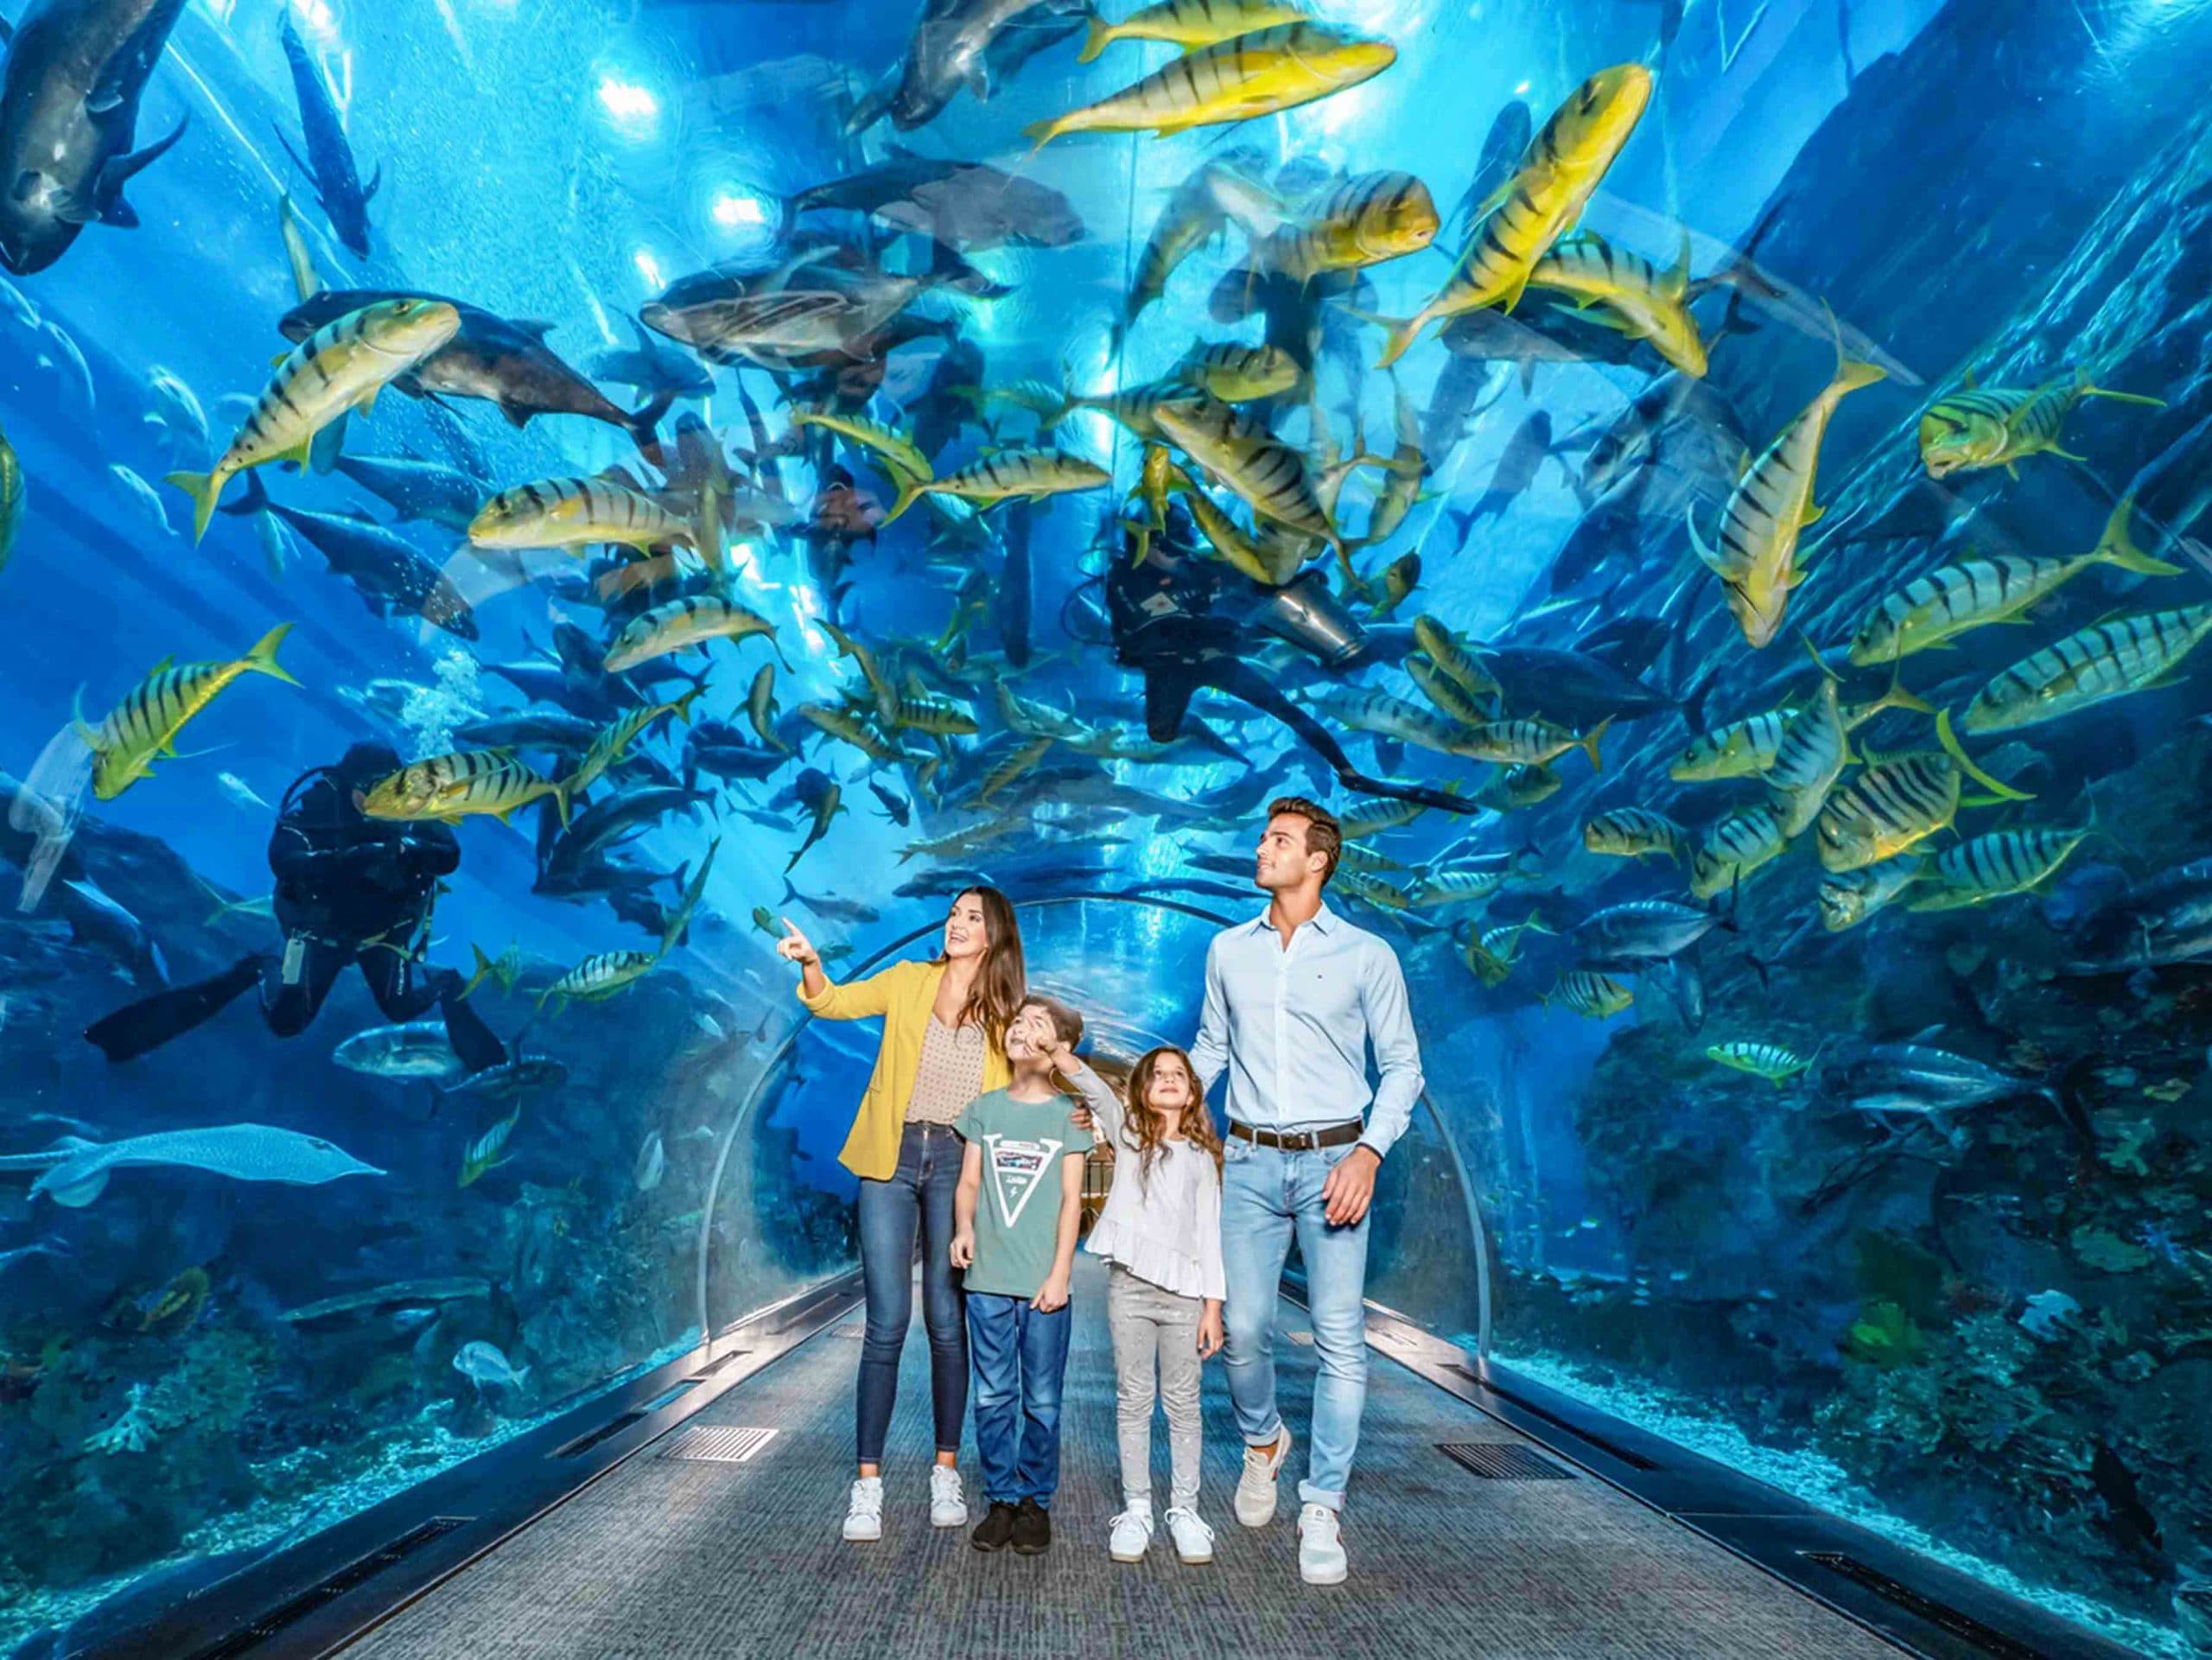 Urlaub in Dubai Dubai Aquarium3 1 scaled